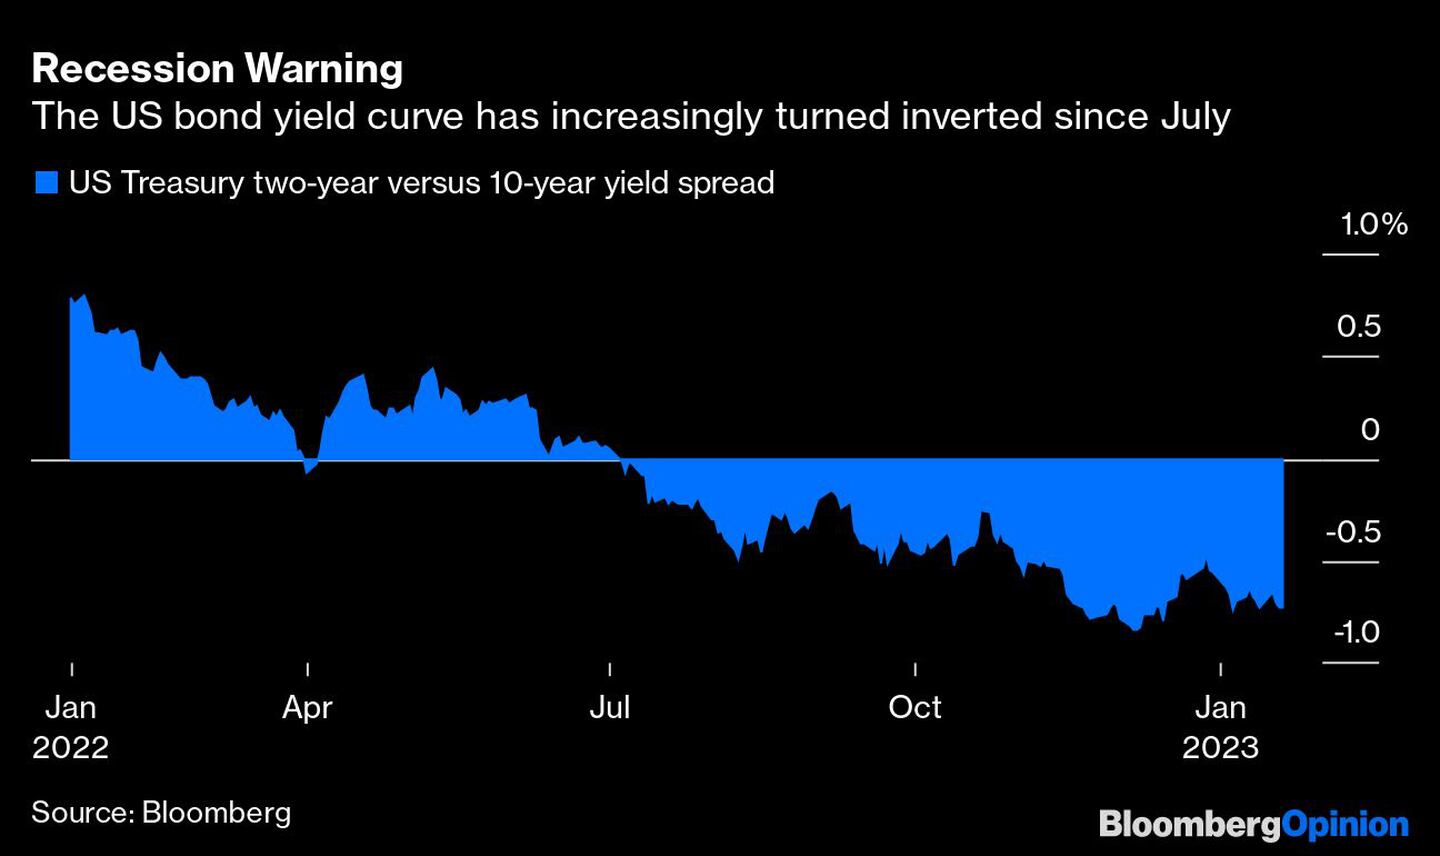 La curva de bonos de EE.UU. se ha invertido cada vez más desde juliodfd